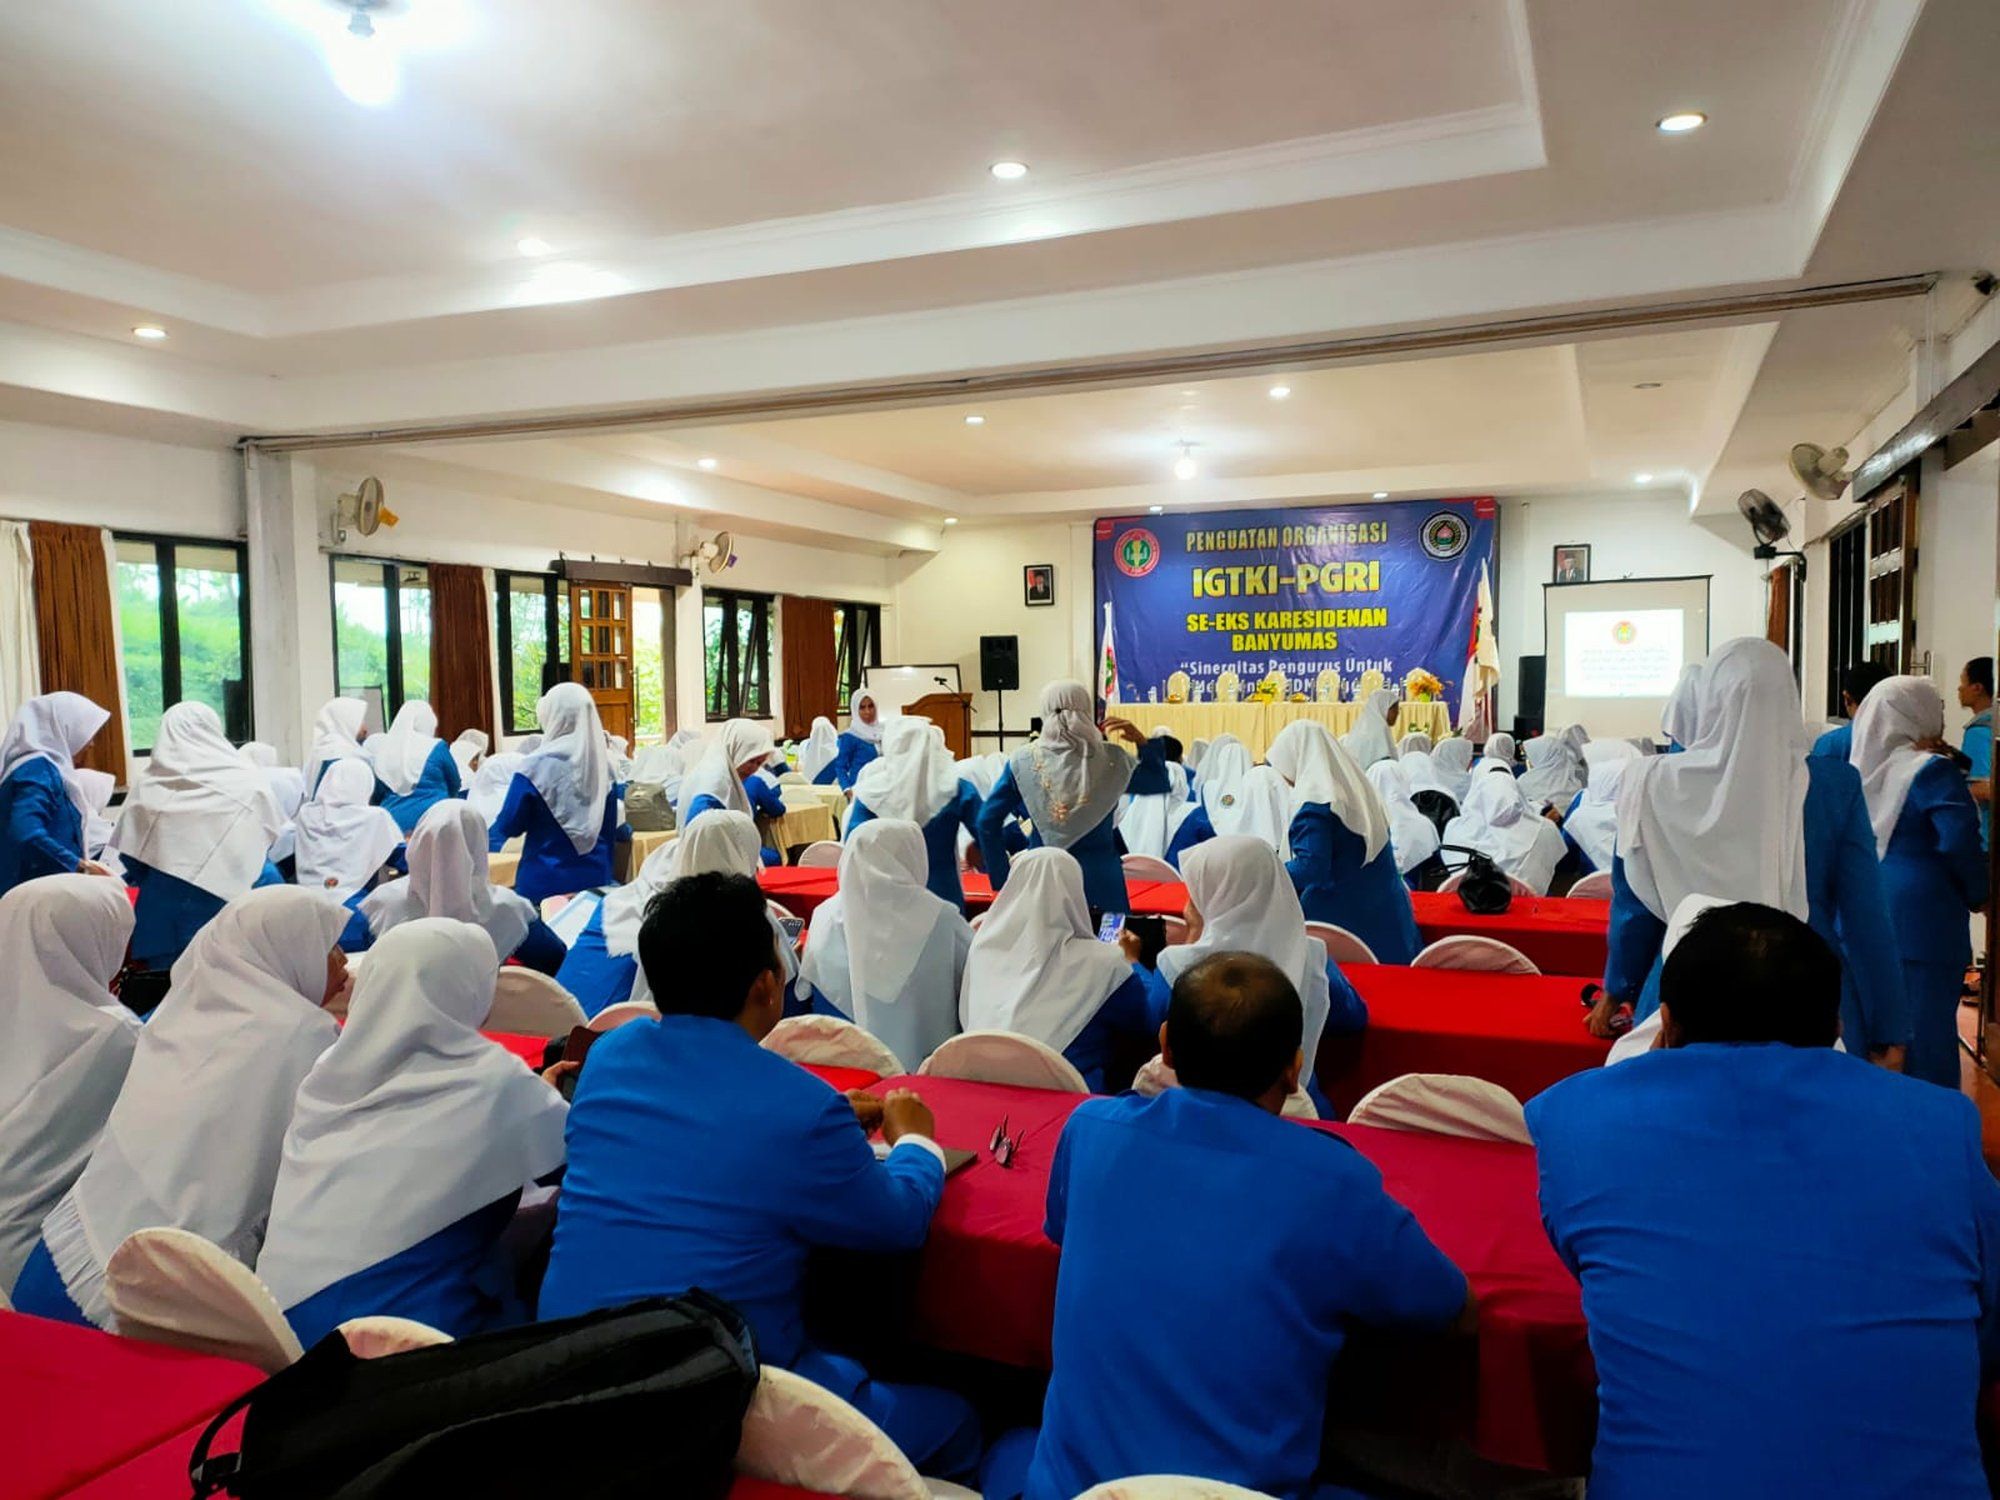 Penguatan Organisasi IGTKI-PGRI Se Eks Karesidenan Banyumas di Moro Seneng Hotel Baturraden, Banyumas Jawa Tengah, Sabtu (29/6/2024)